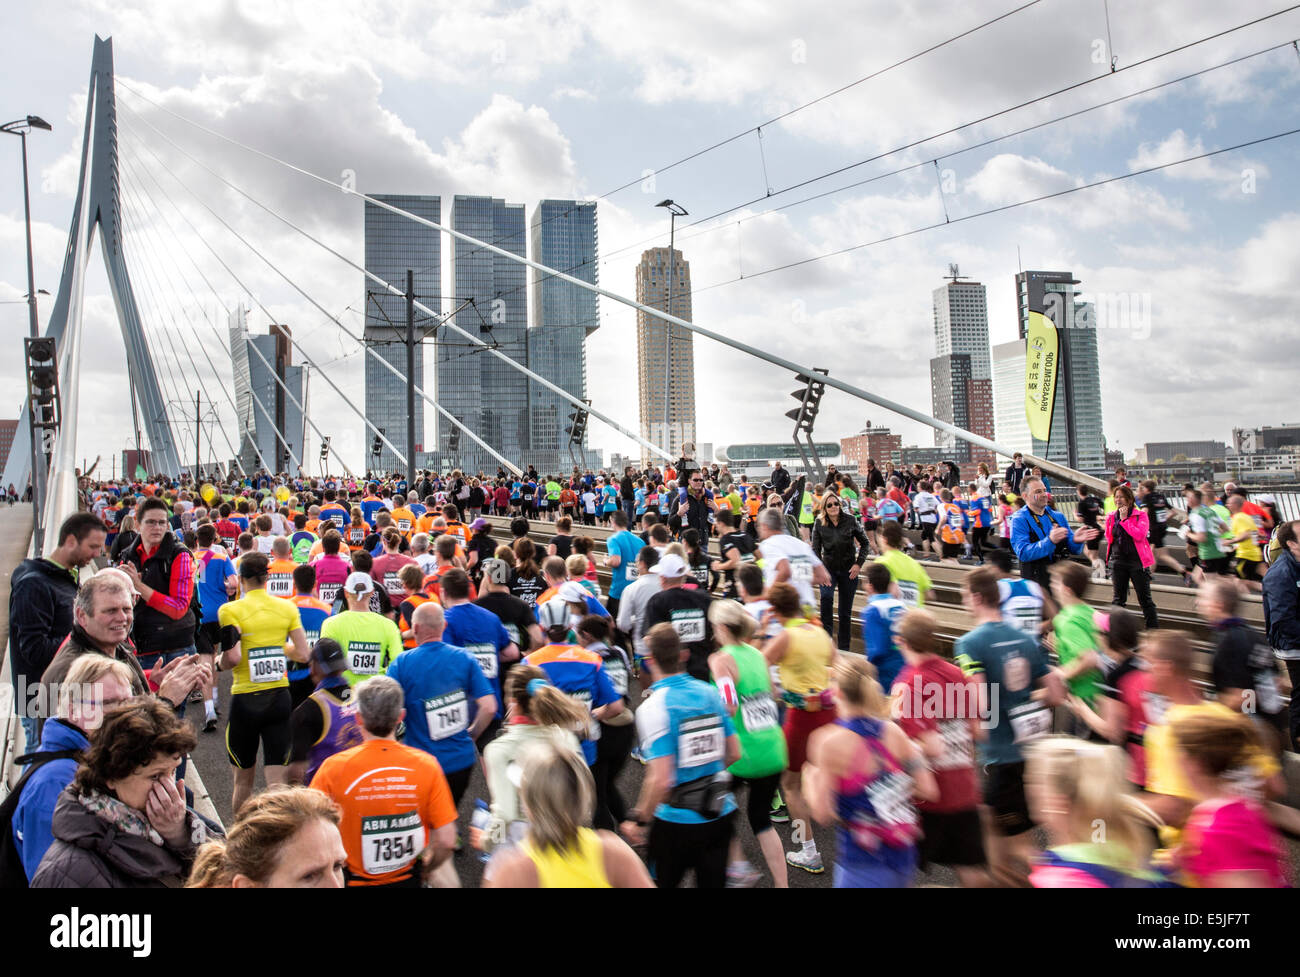 Niederlande, Rotterdam, ABN-AMRO Marathon 2014. Läufer auf Erasmus-Brücke Stockfoto